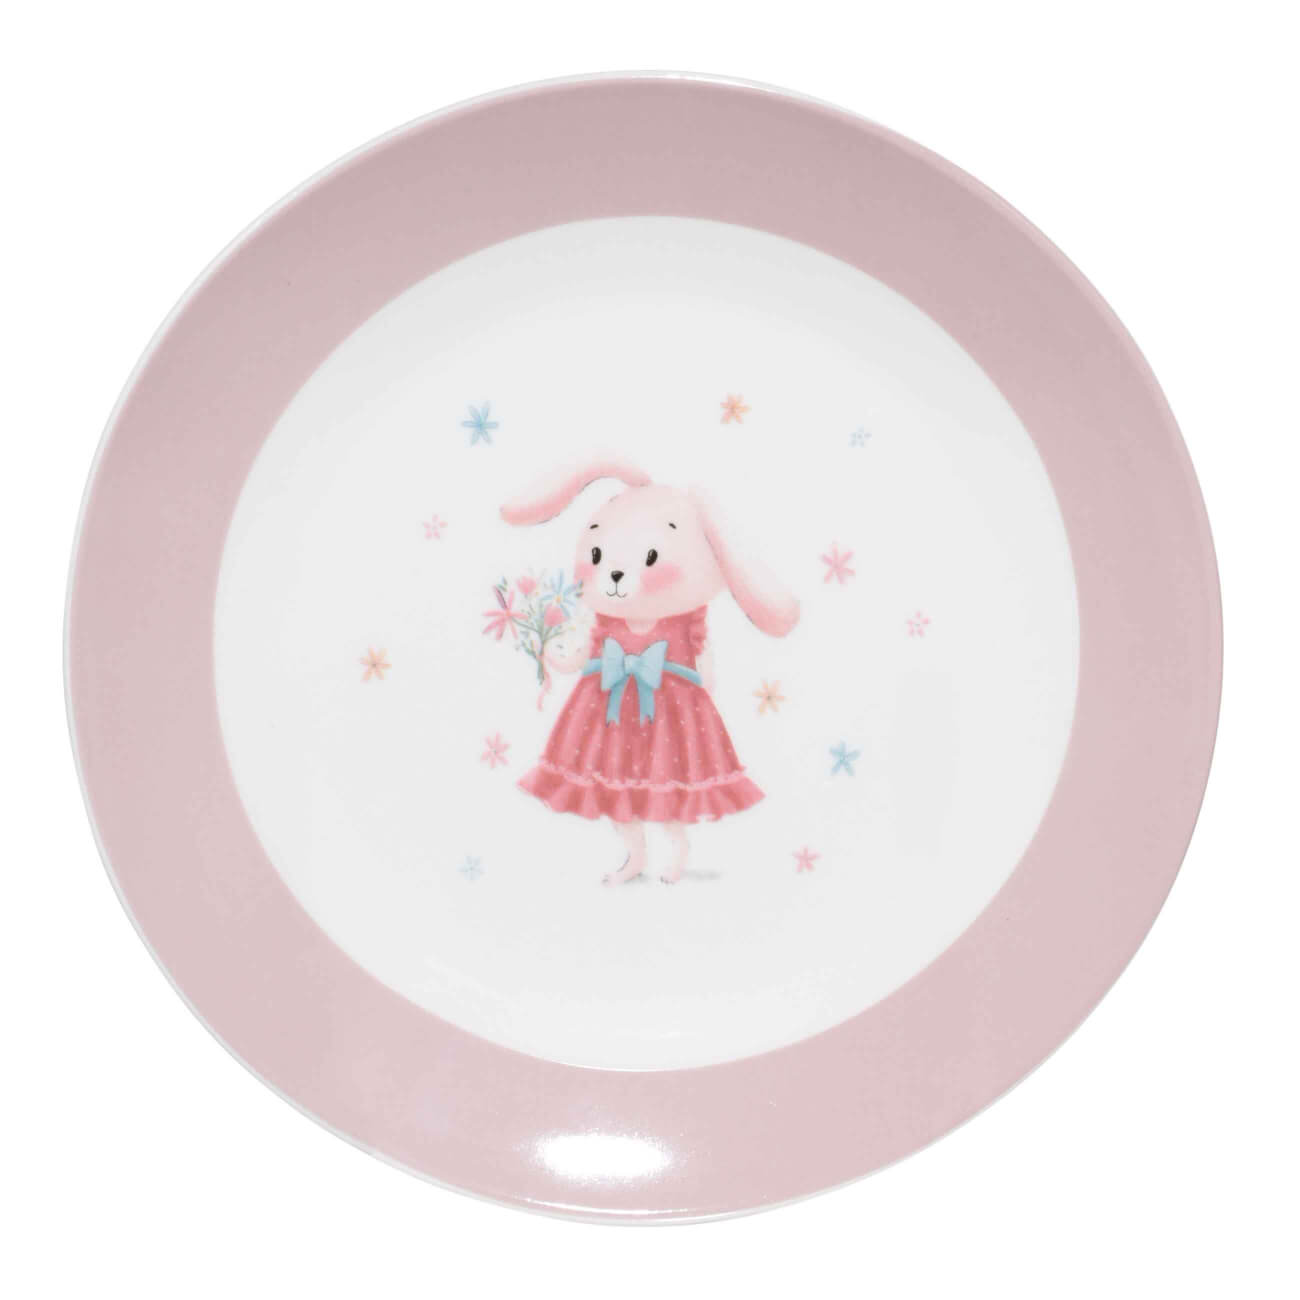 Тарелка закусочная, детская, 19 см, фарфор N, бело-розовая, Крольчиха с цветами, Ideas life